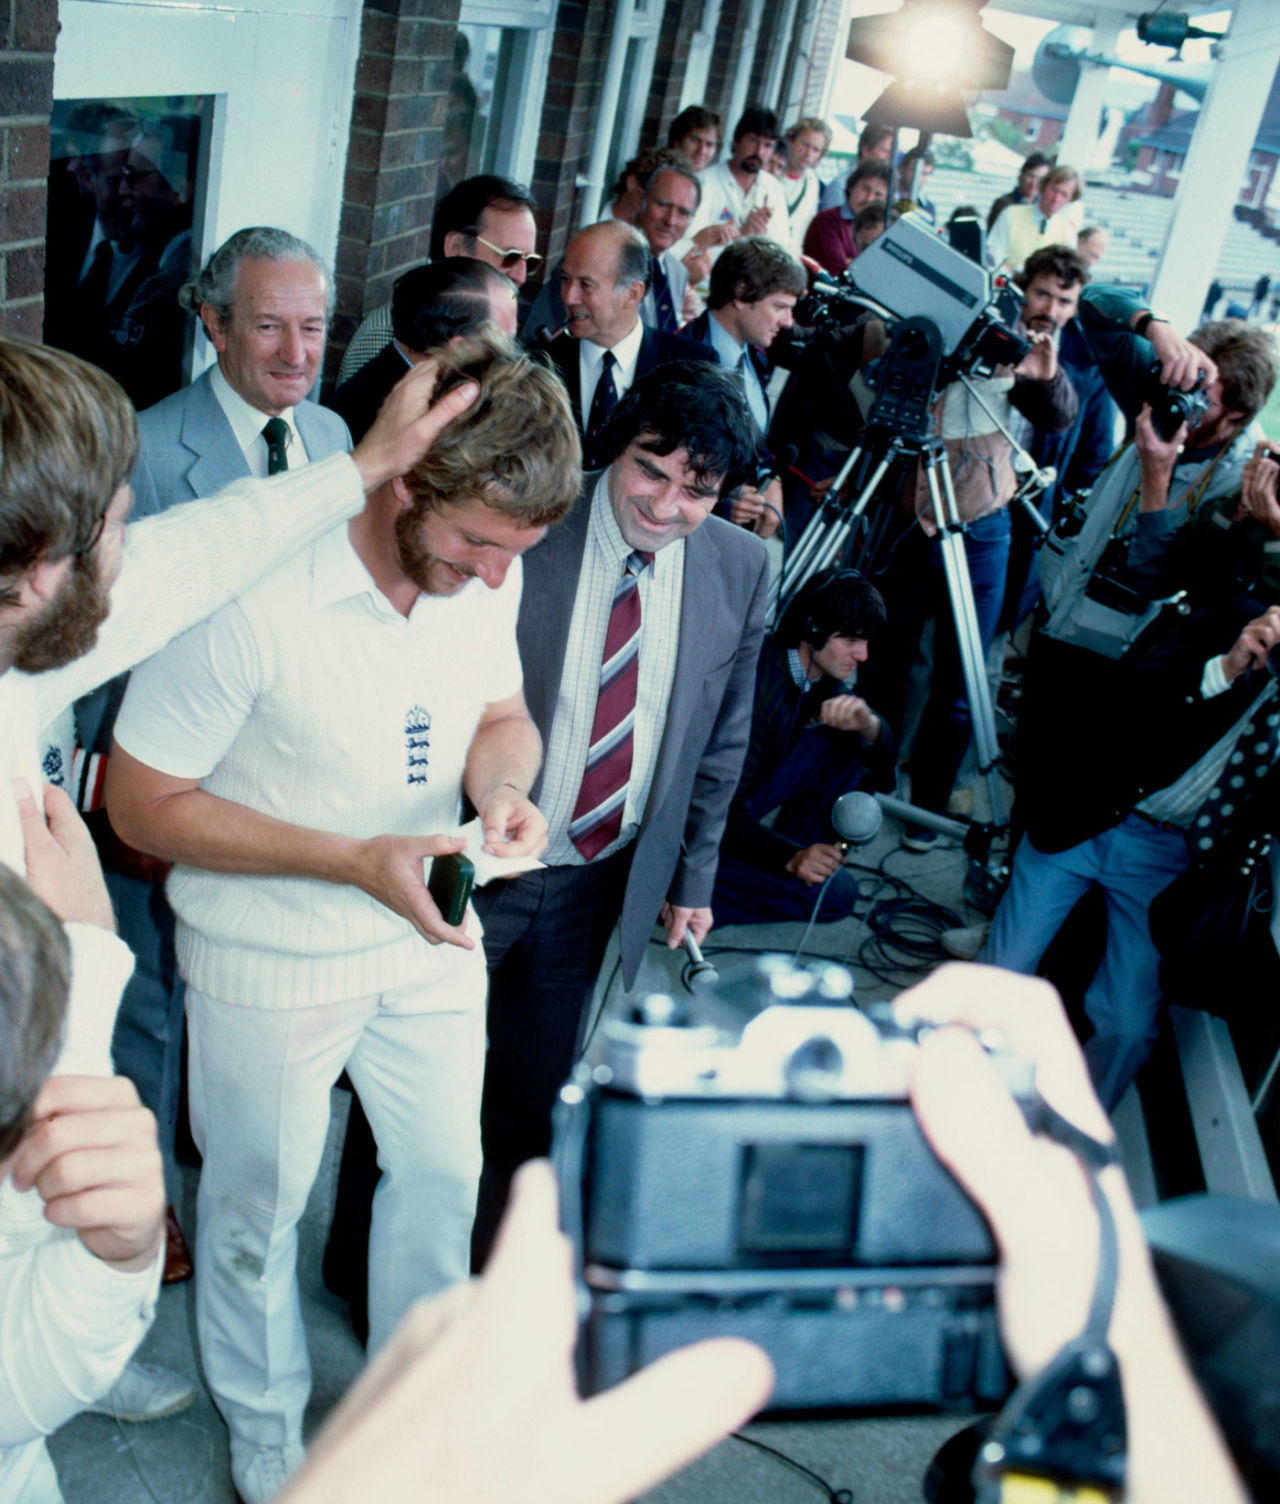 Ian Botham receives the Man-of-the-Match award after the historic Headingley win, England v Australia, 3rd Test, Headingley, 5th day, July 21, 1981